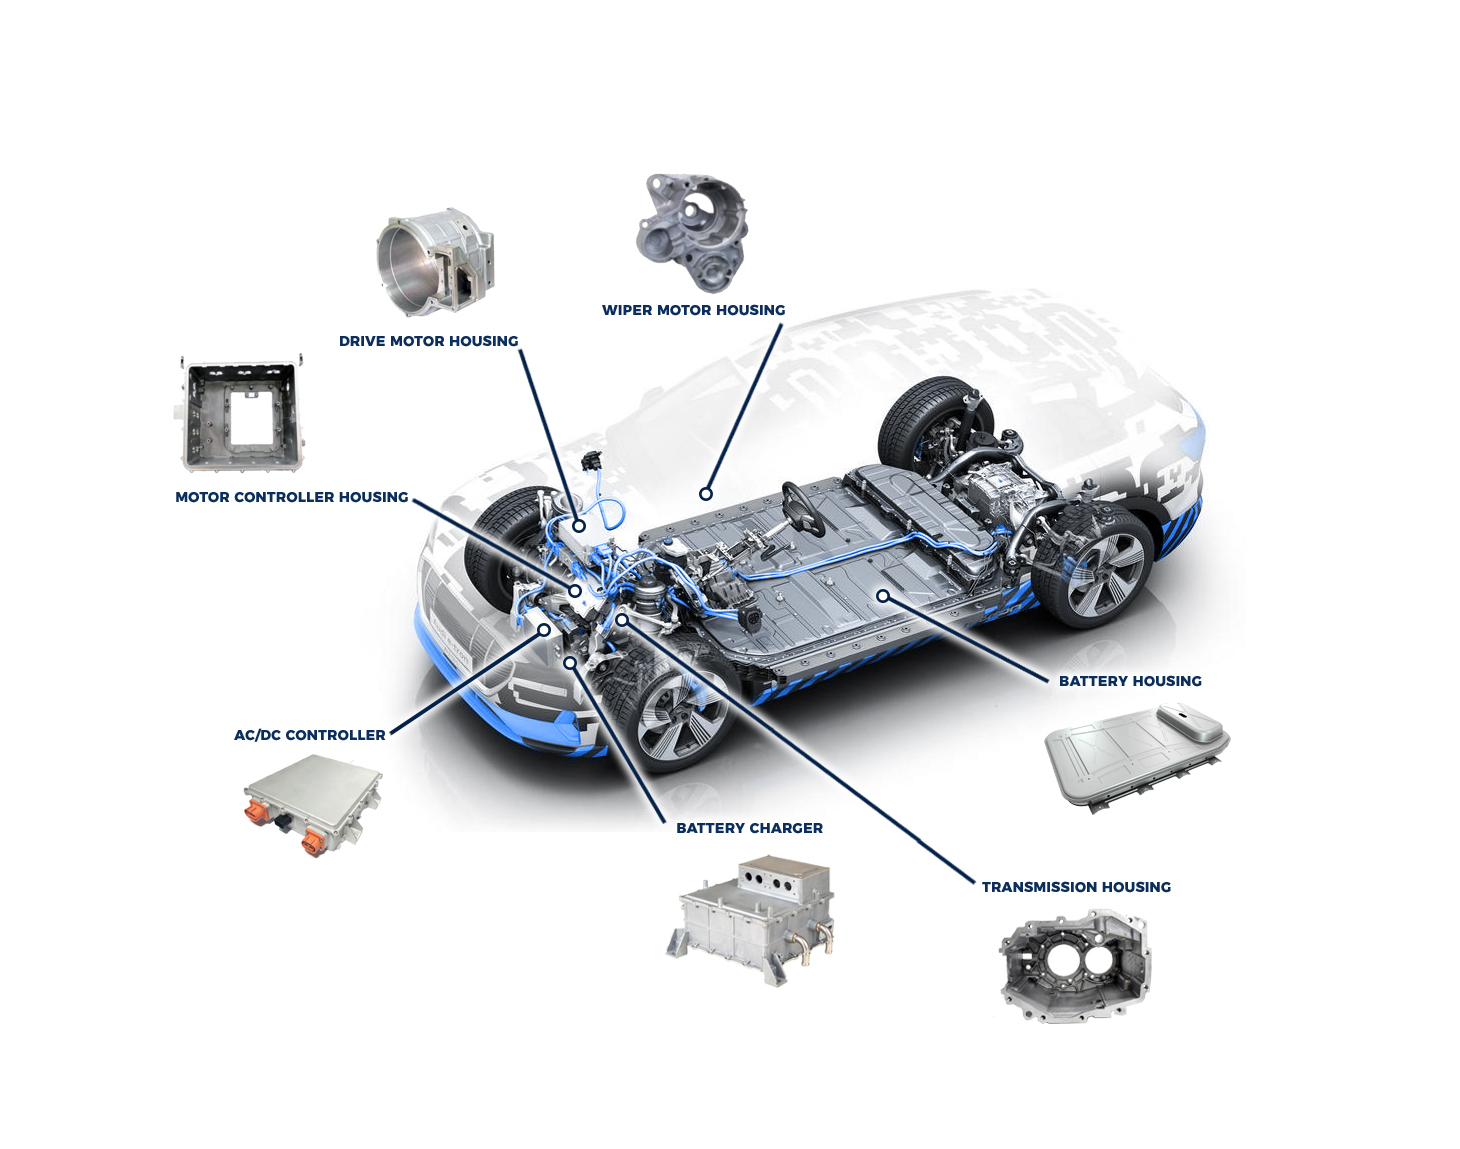 Las tres primeras aplicaciones de fundición de aluminio para vehículos eléctricos y comunicaciones 5G